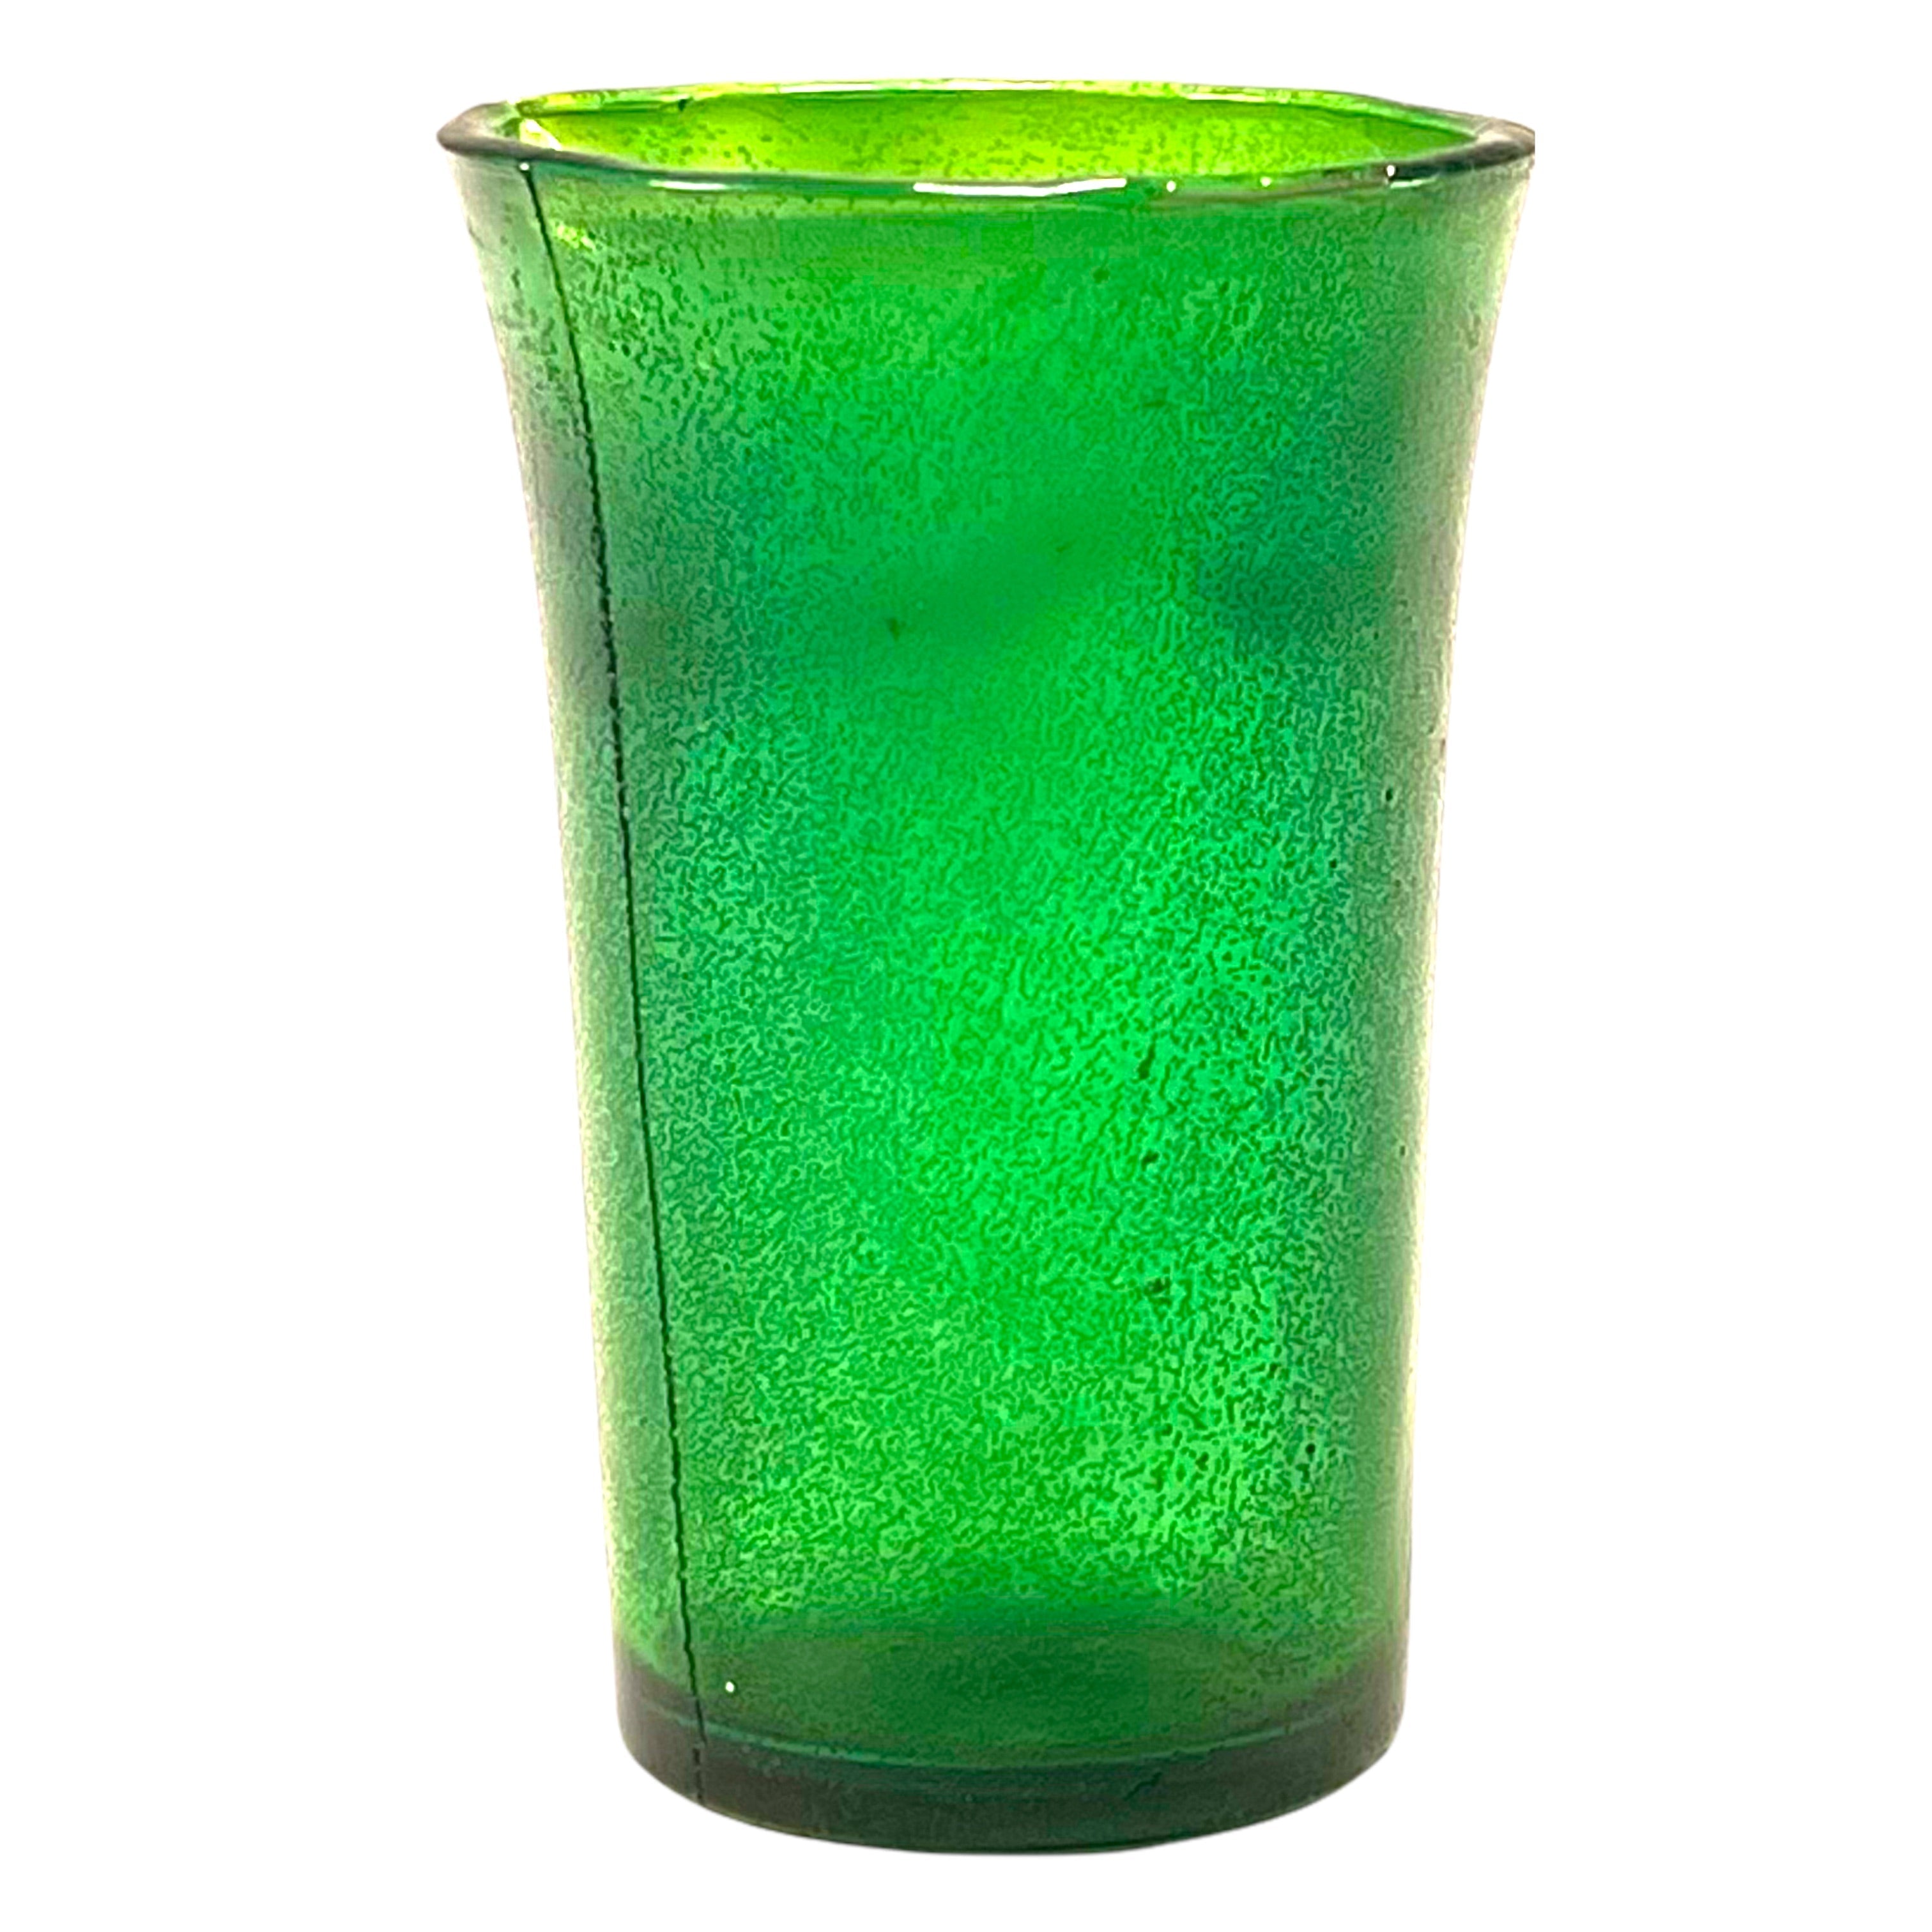 SMASHProps Breakaway Dessert or Cordial Shot Glass - DARK GREEN translucent - Dark Green Translucent